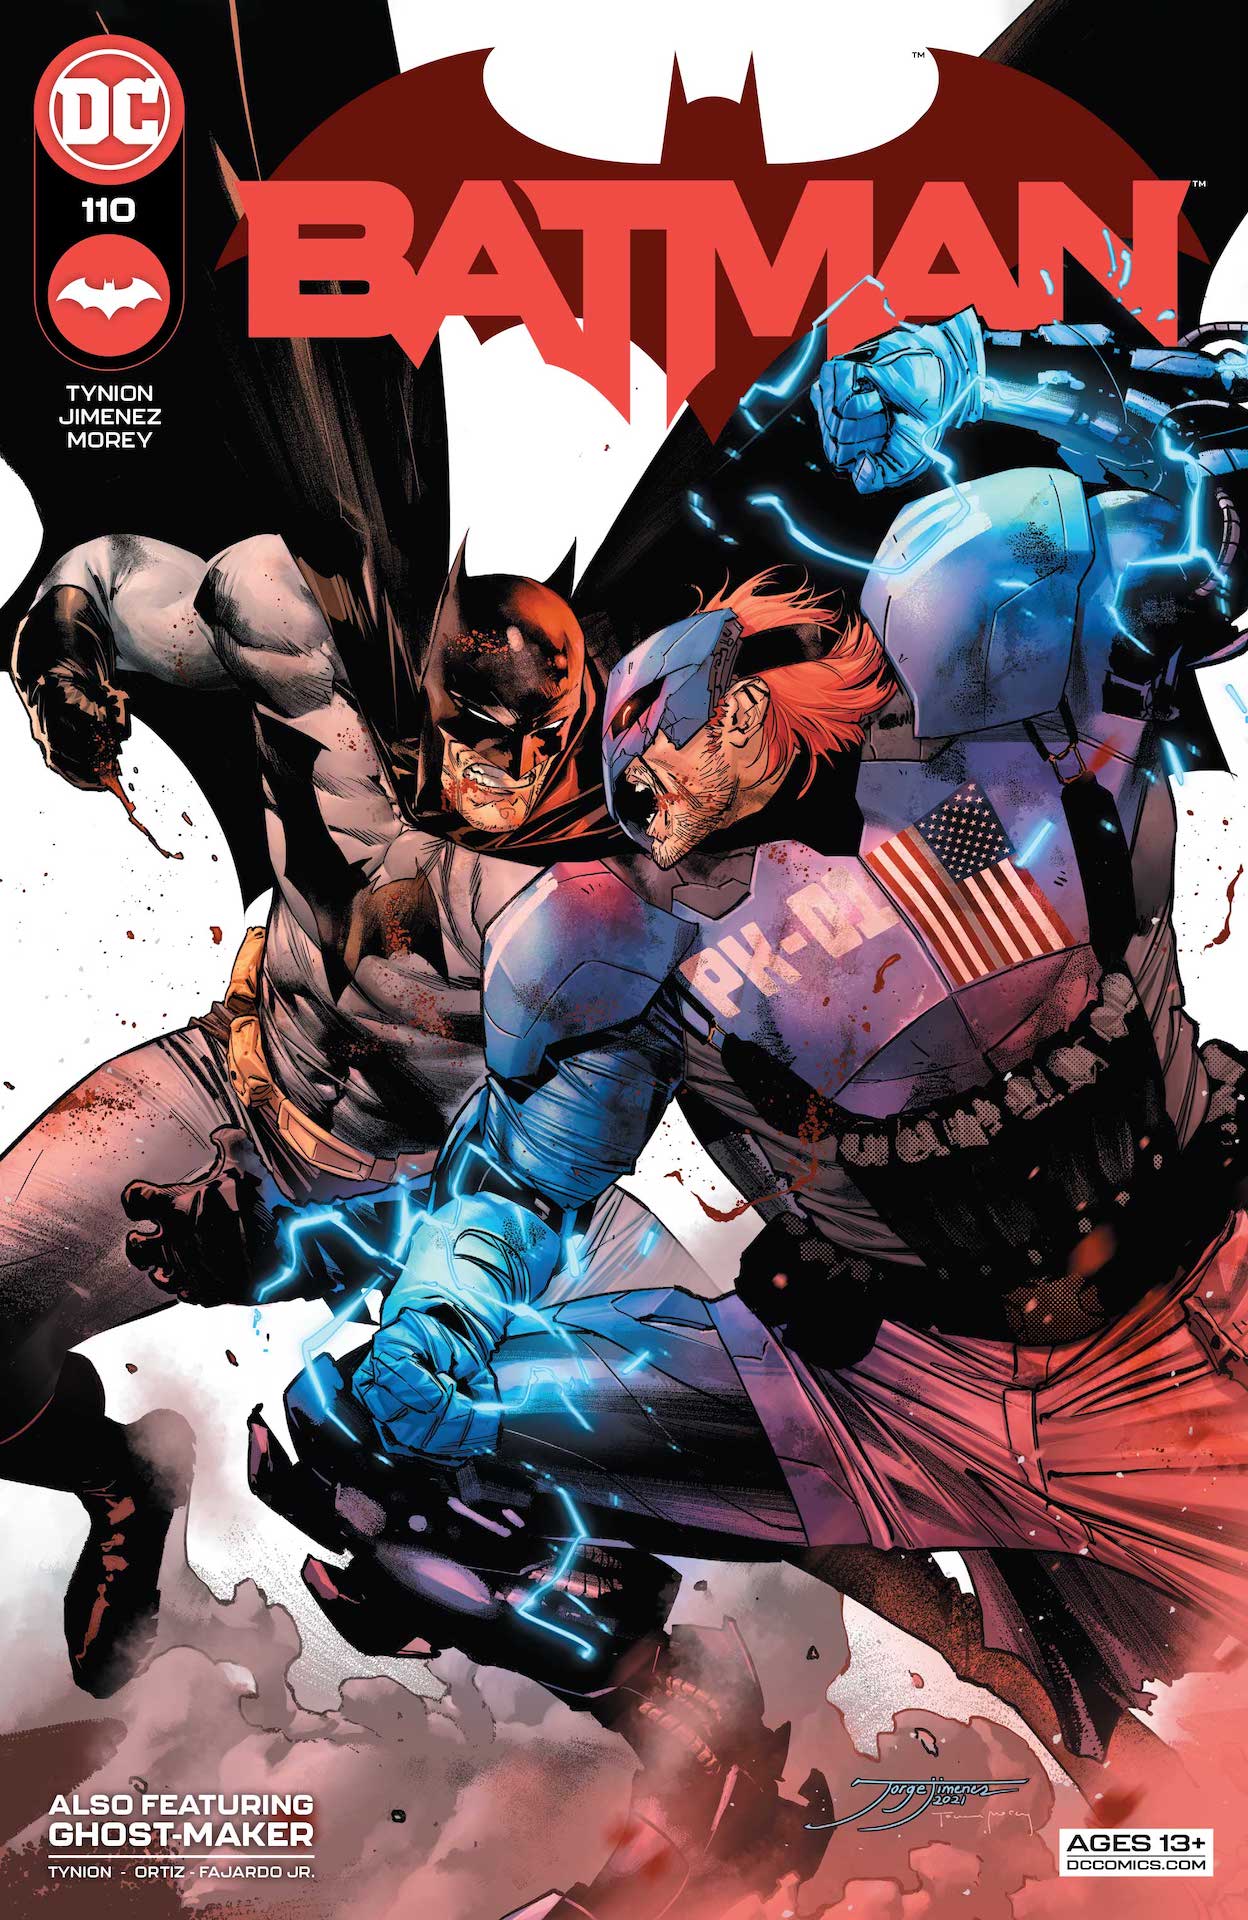 DC Preview: Batman #110